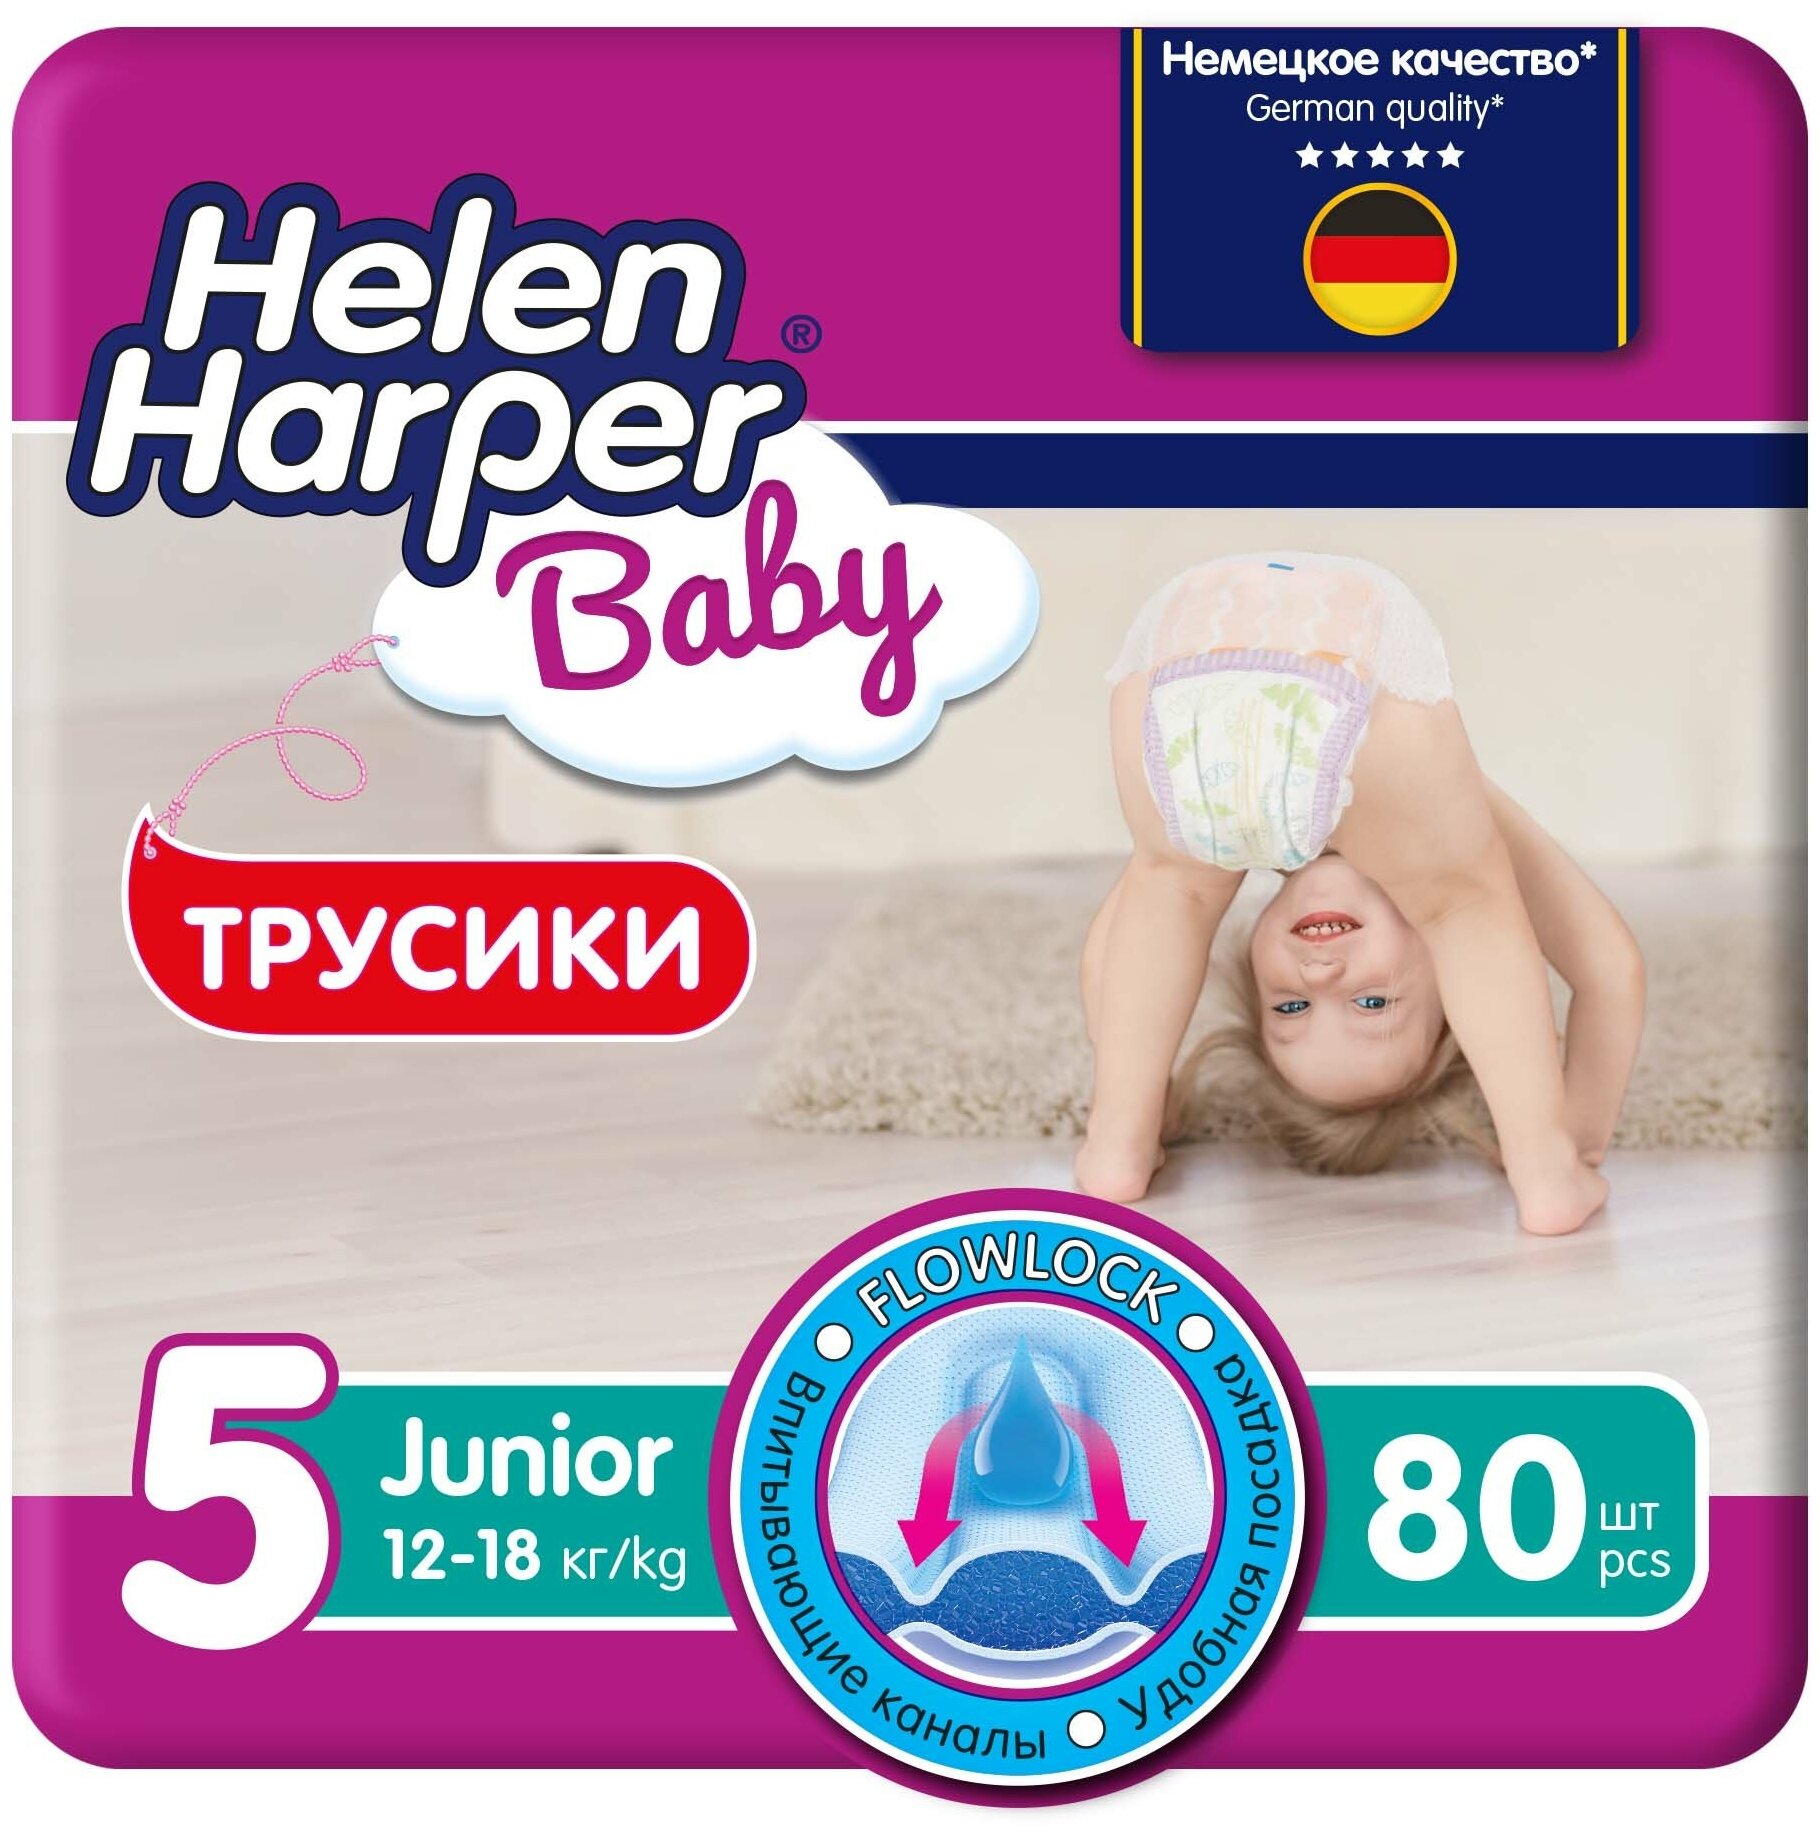 HELEN HARPER BABY Детские трусики-подгузники размер 5 (Junior) 12-18 кг, 80 шт.